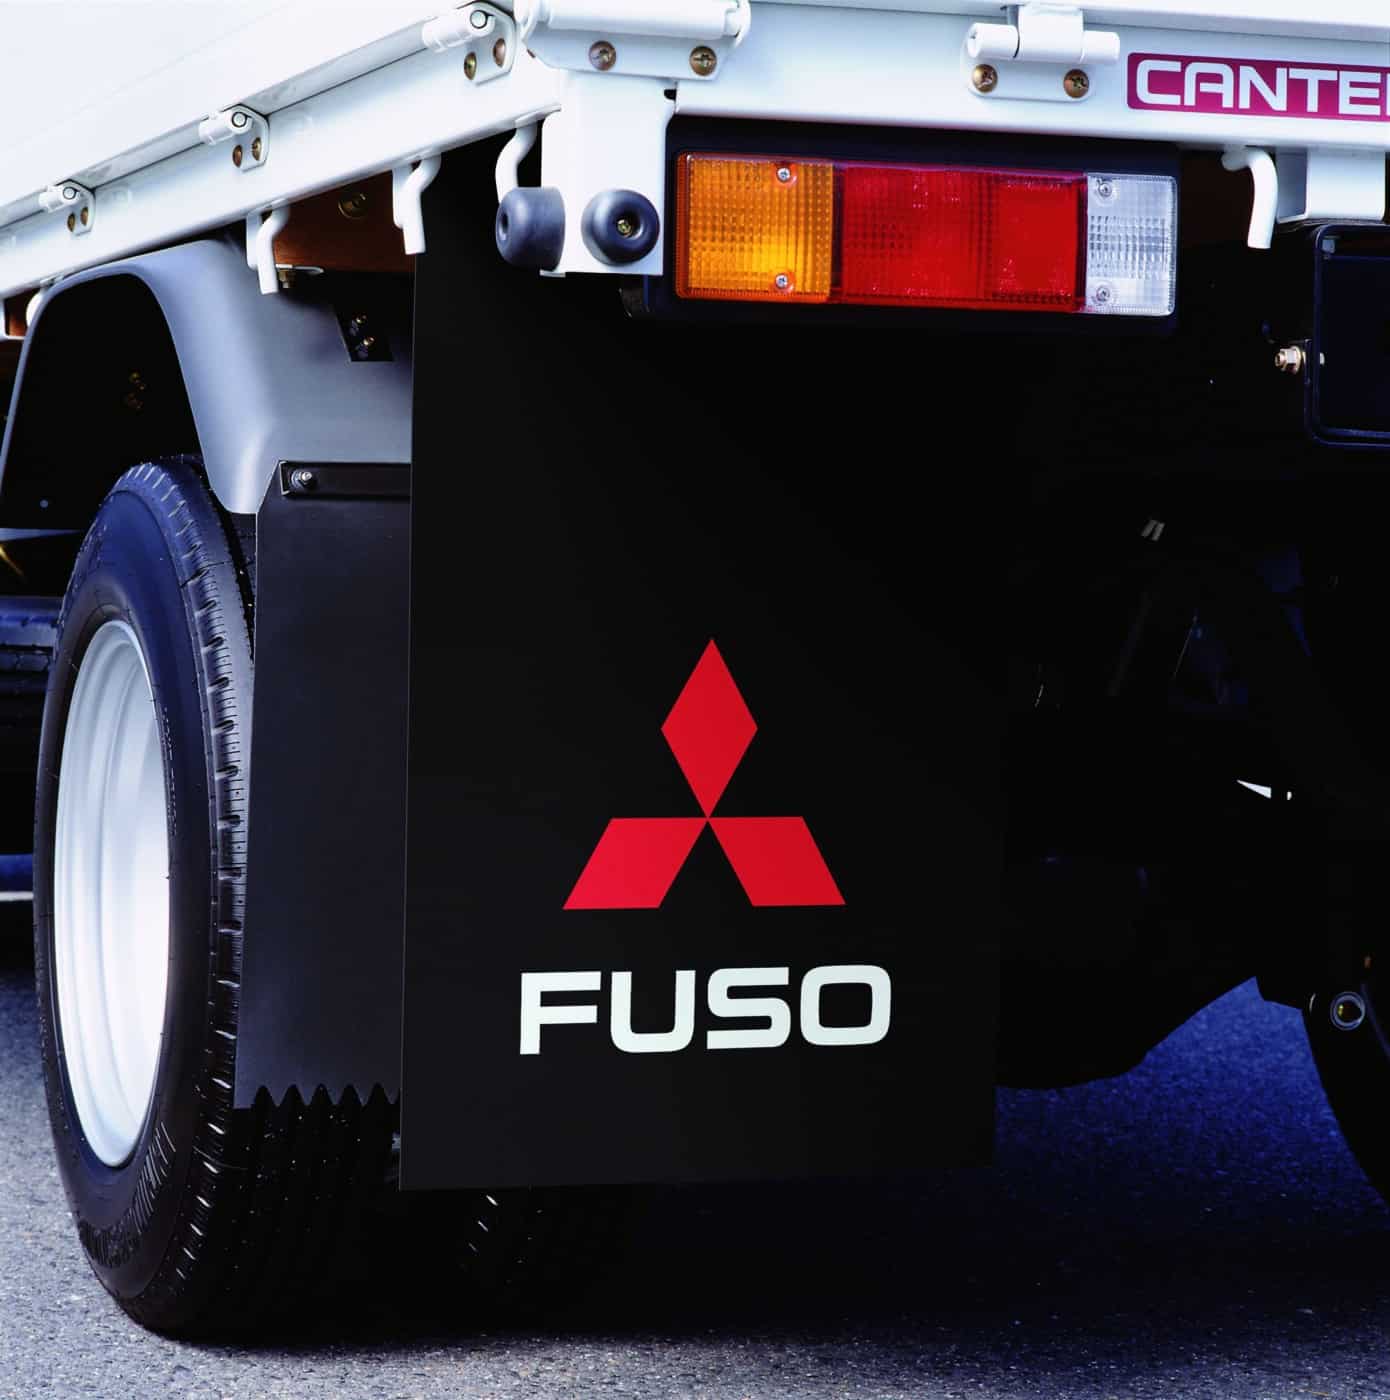 Die FUSO Schmutzabweiser schützen das Fahrzeug, die Mitfahrer, andere Fahrzeuge und Fußgänger vor Schlamm und Verschmutzungen, die durch die Reifen aufgewirbelt werden.